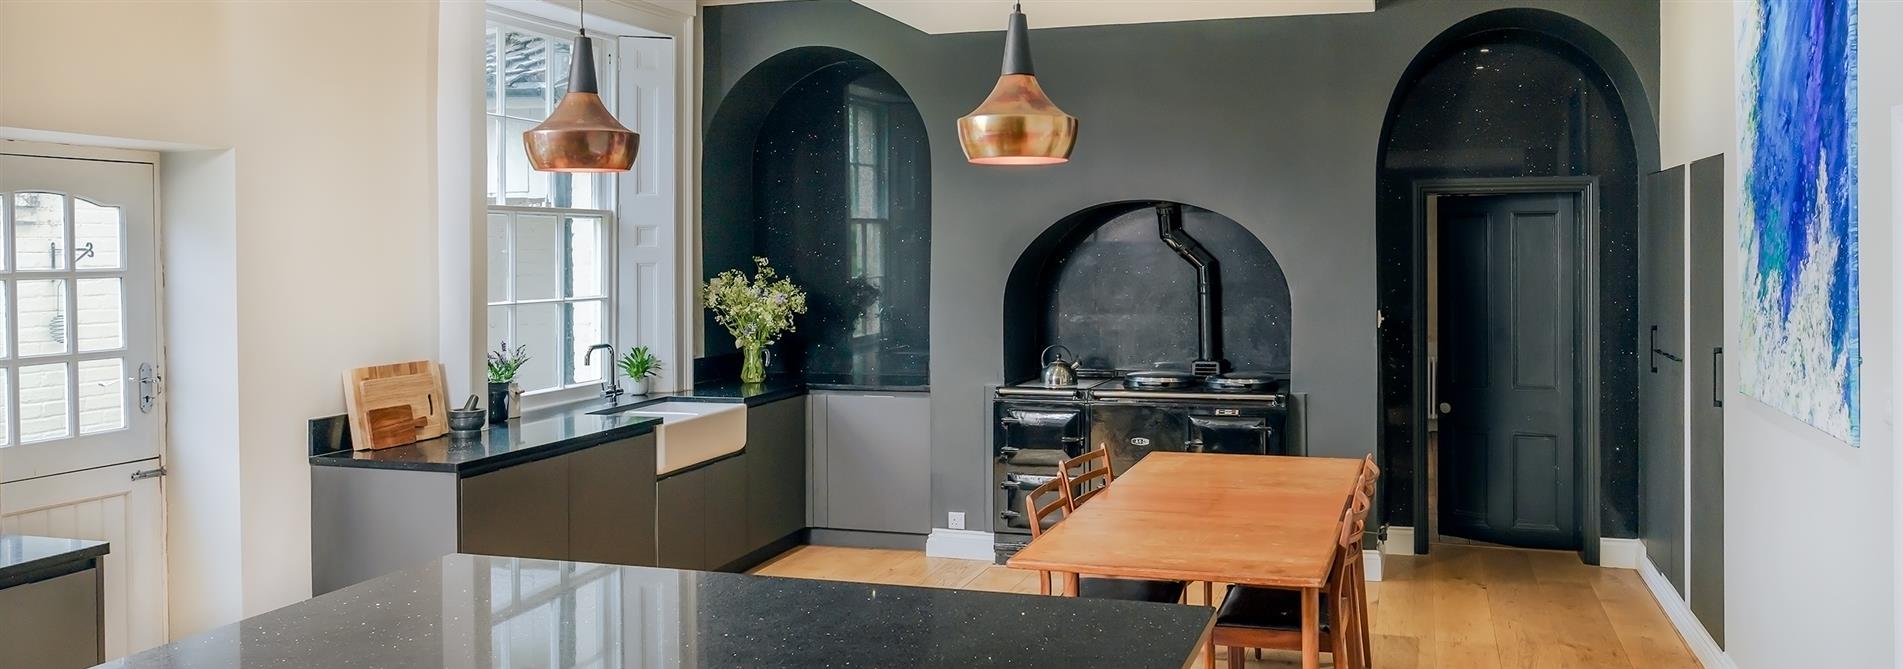 Black Granite Kitchen design